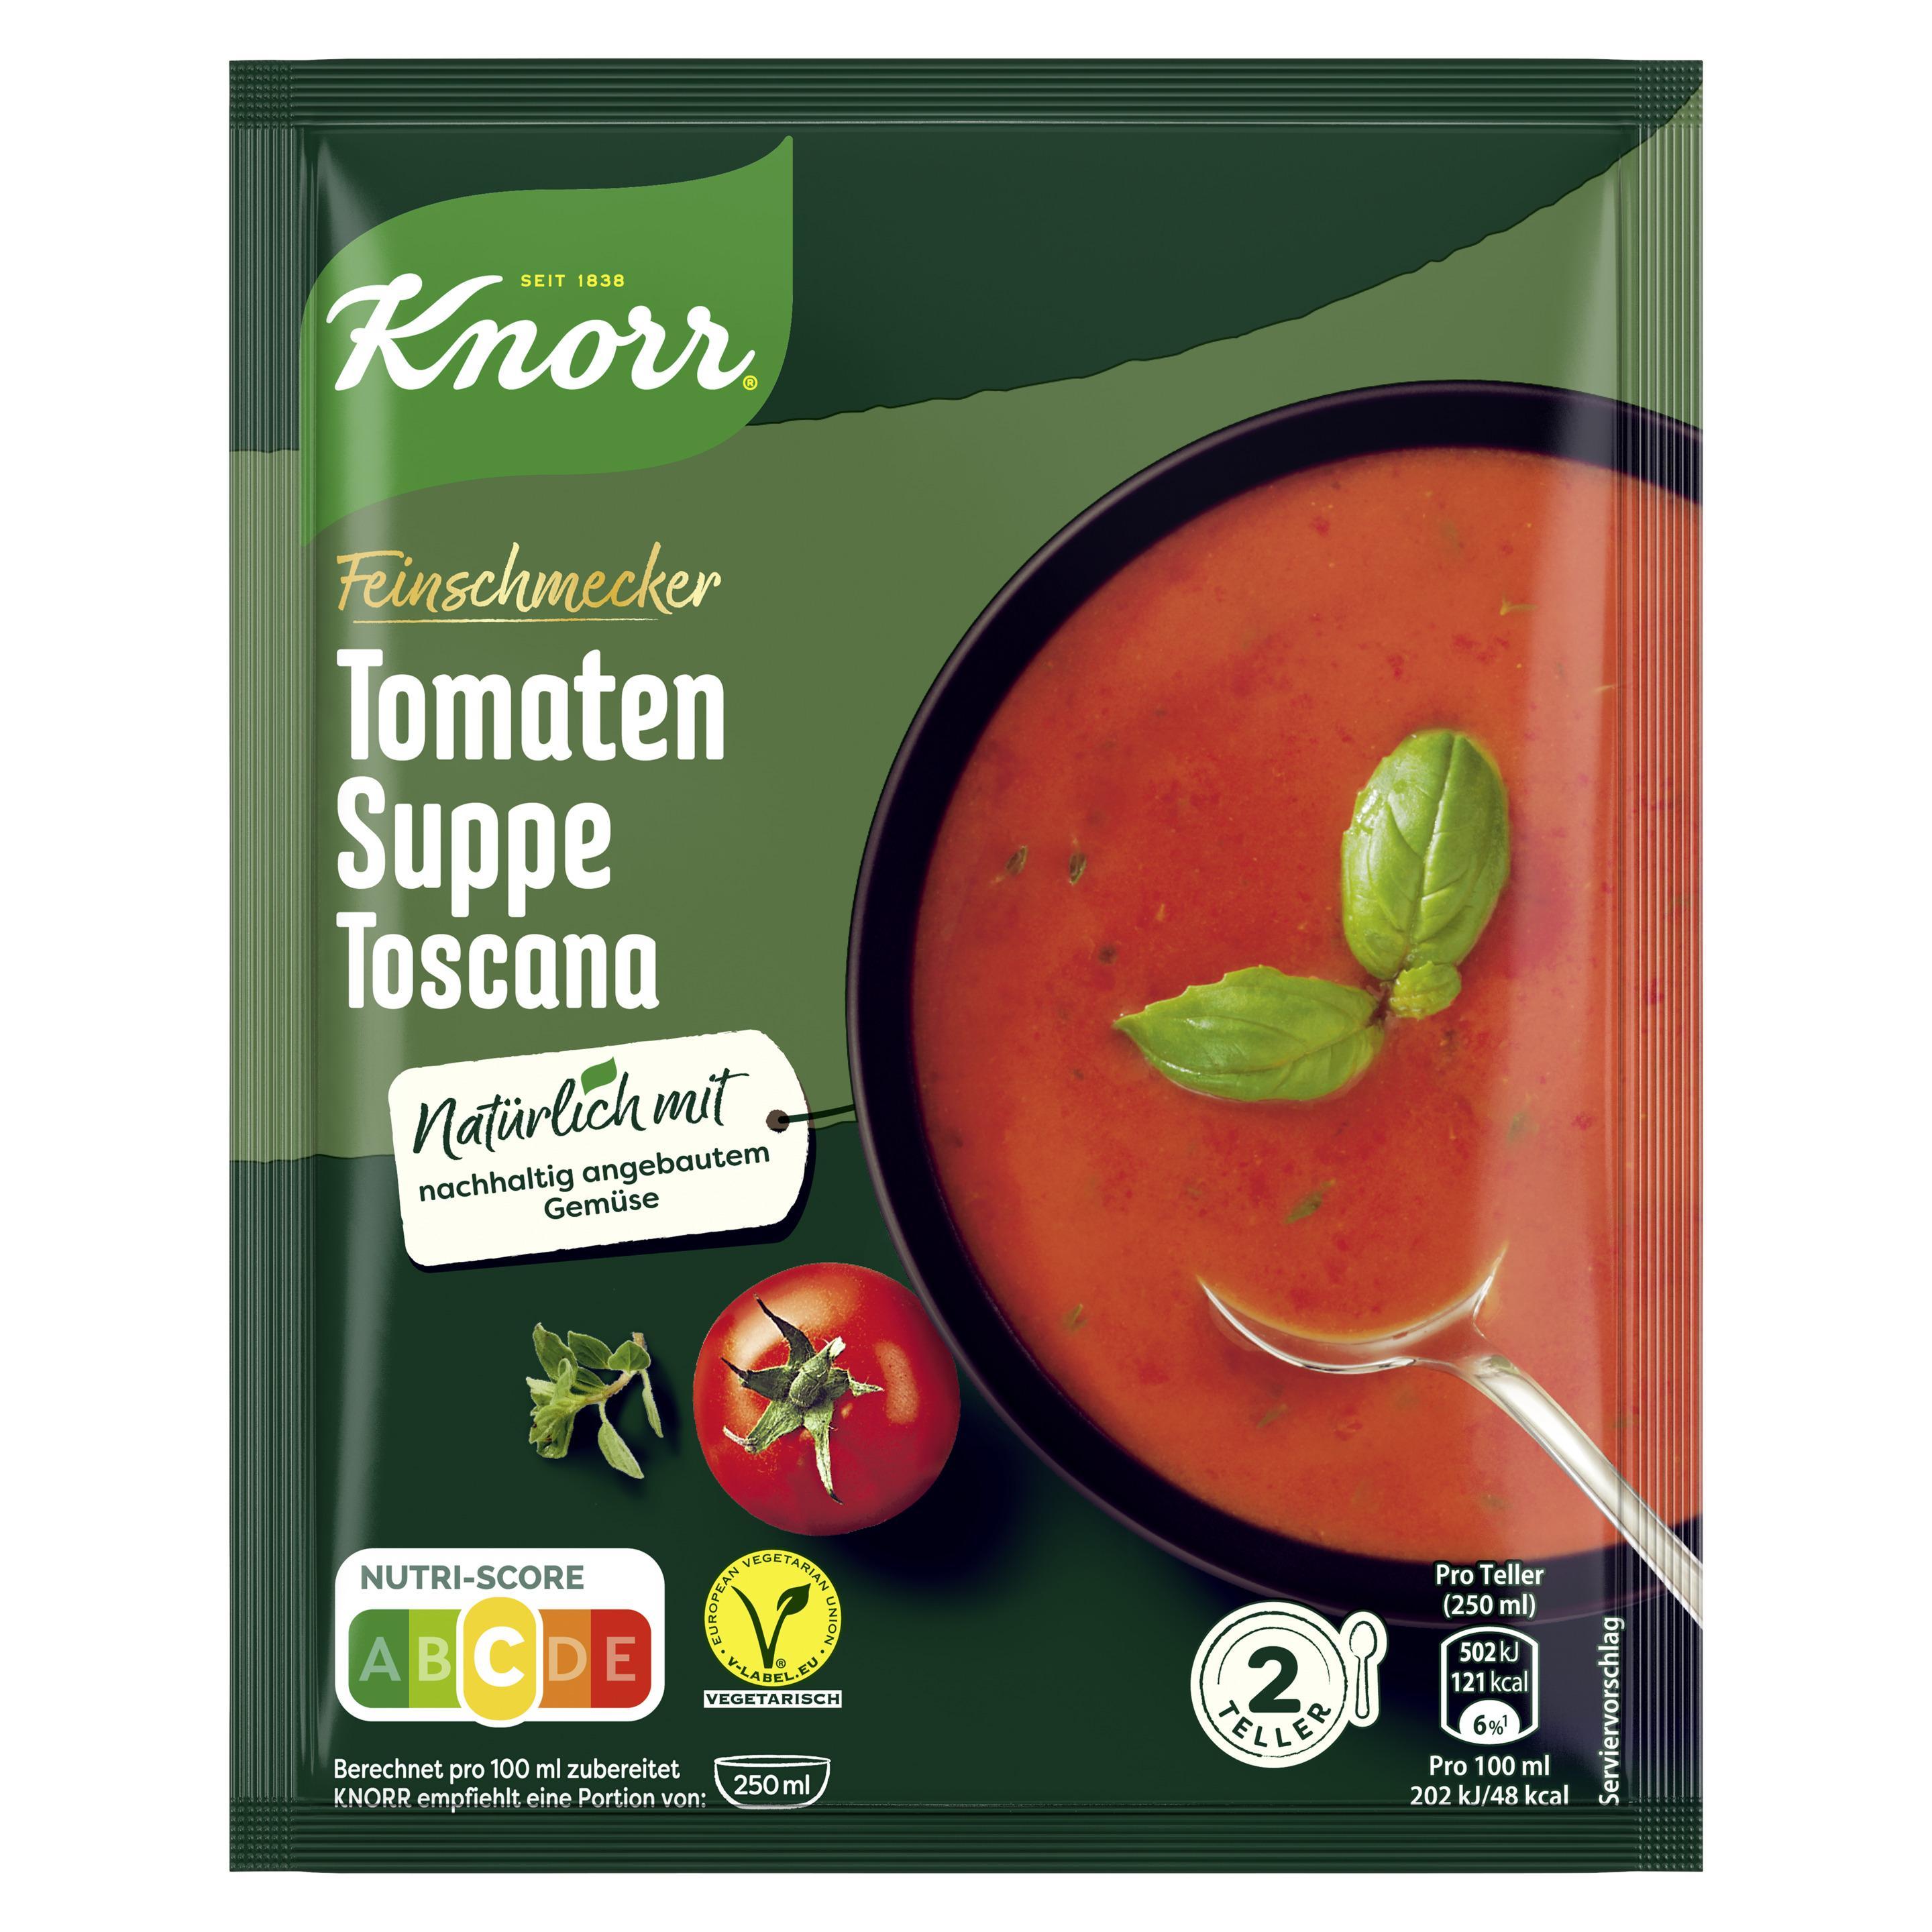 Knorr Feinschmecker Tomaten Suppe Toscana 500ml Beutel